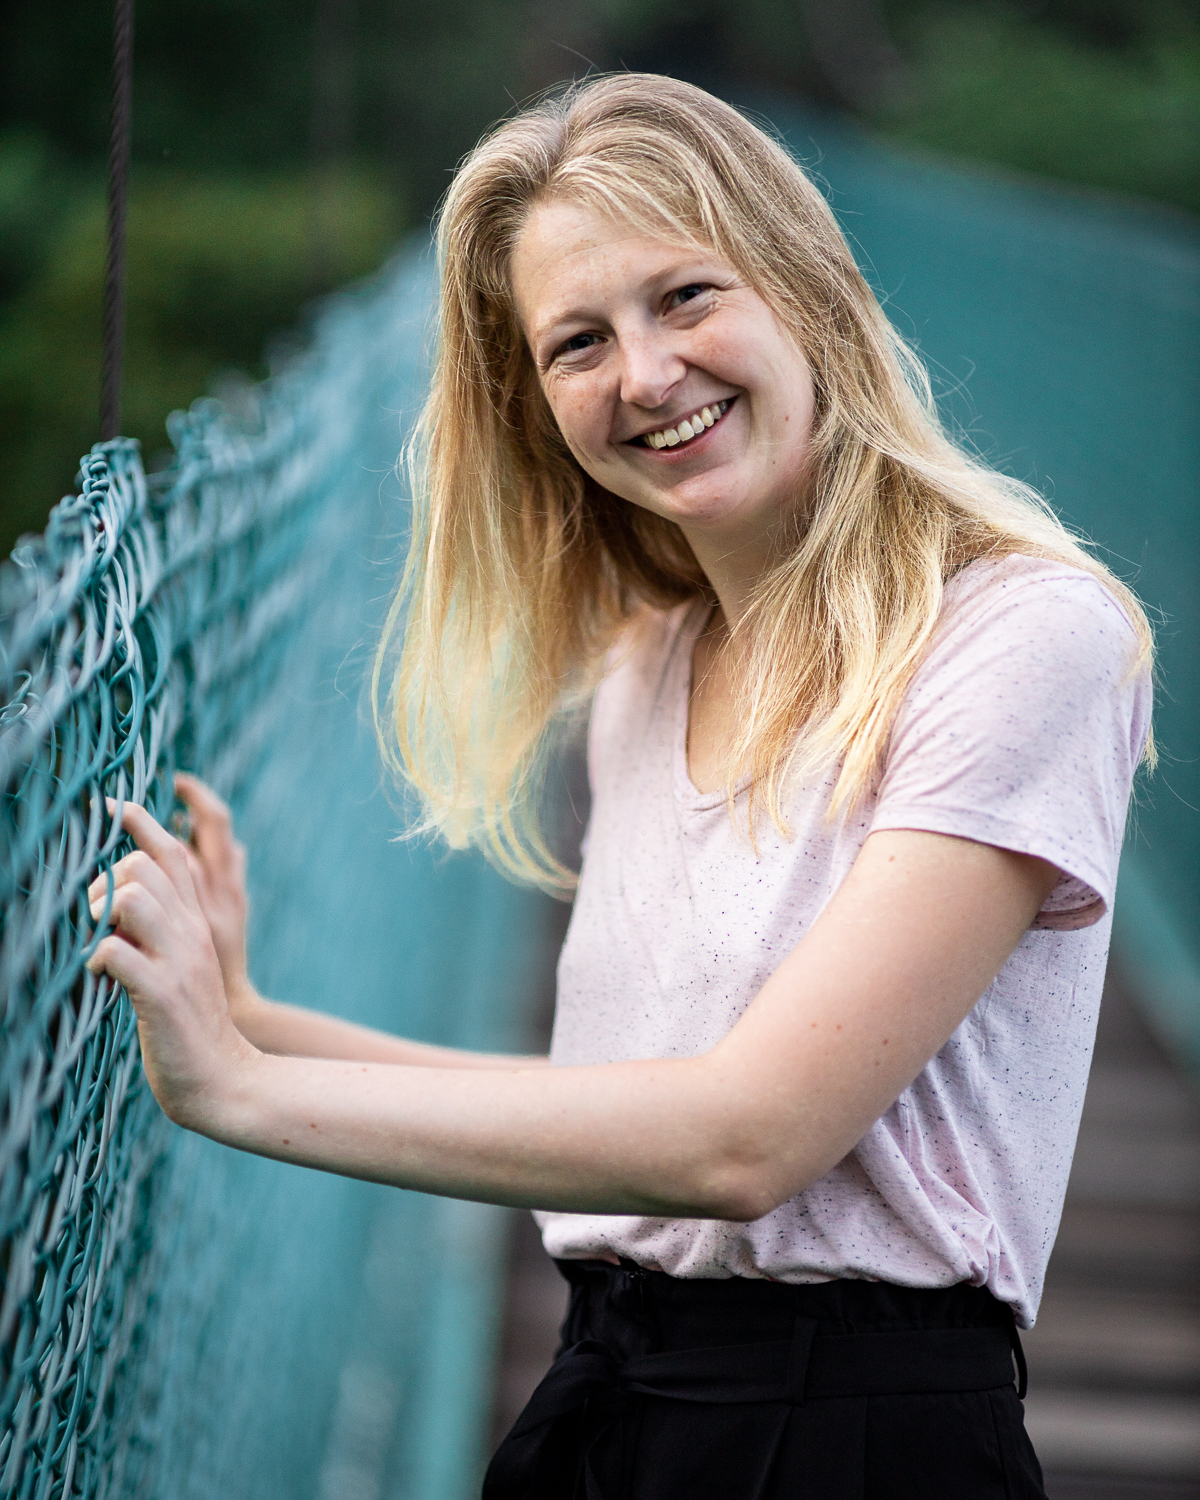 A woman smiling on a bridge